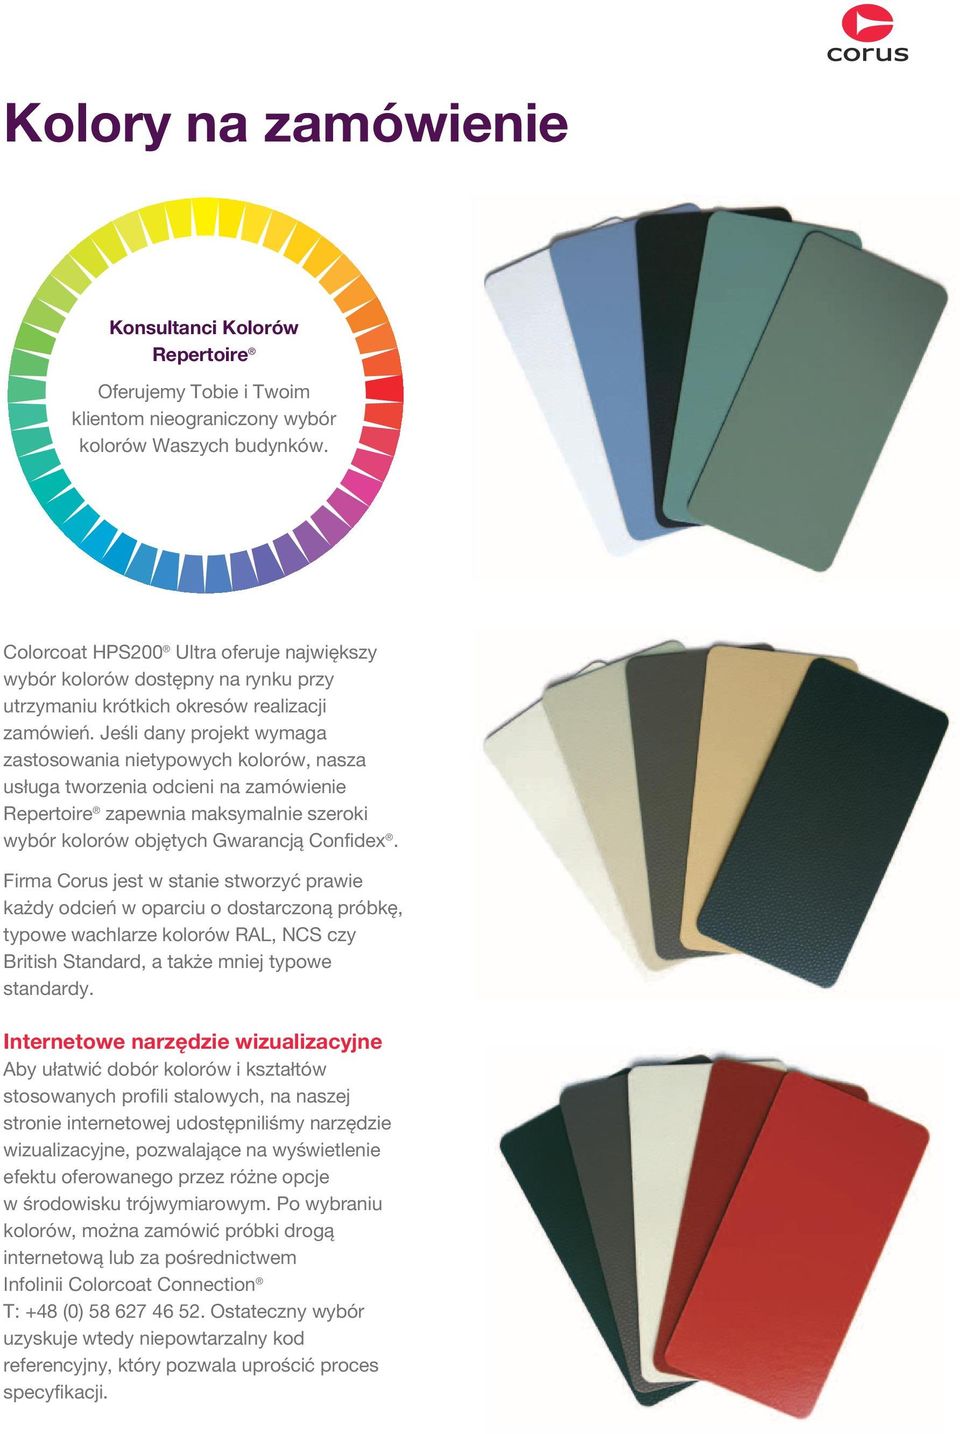 Jeśli dany projekt wymaga zastosowania nietypowych kolorów, nasza usługa tworzenia odcieni na zamówienie Repertoire zapewnia maksymalnie szeroki wybór kolorów objętych Gwarancją Confidex.